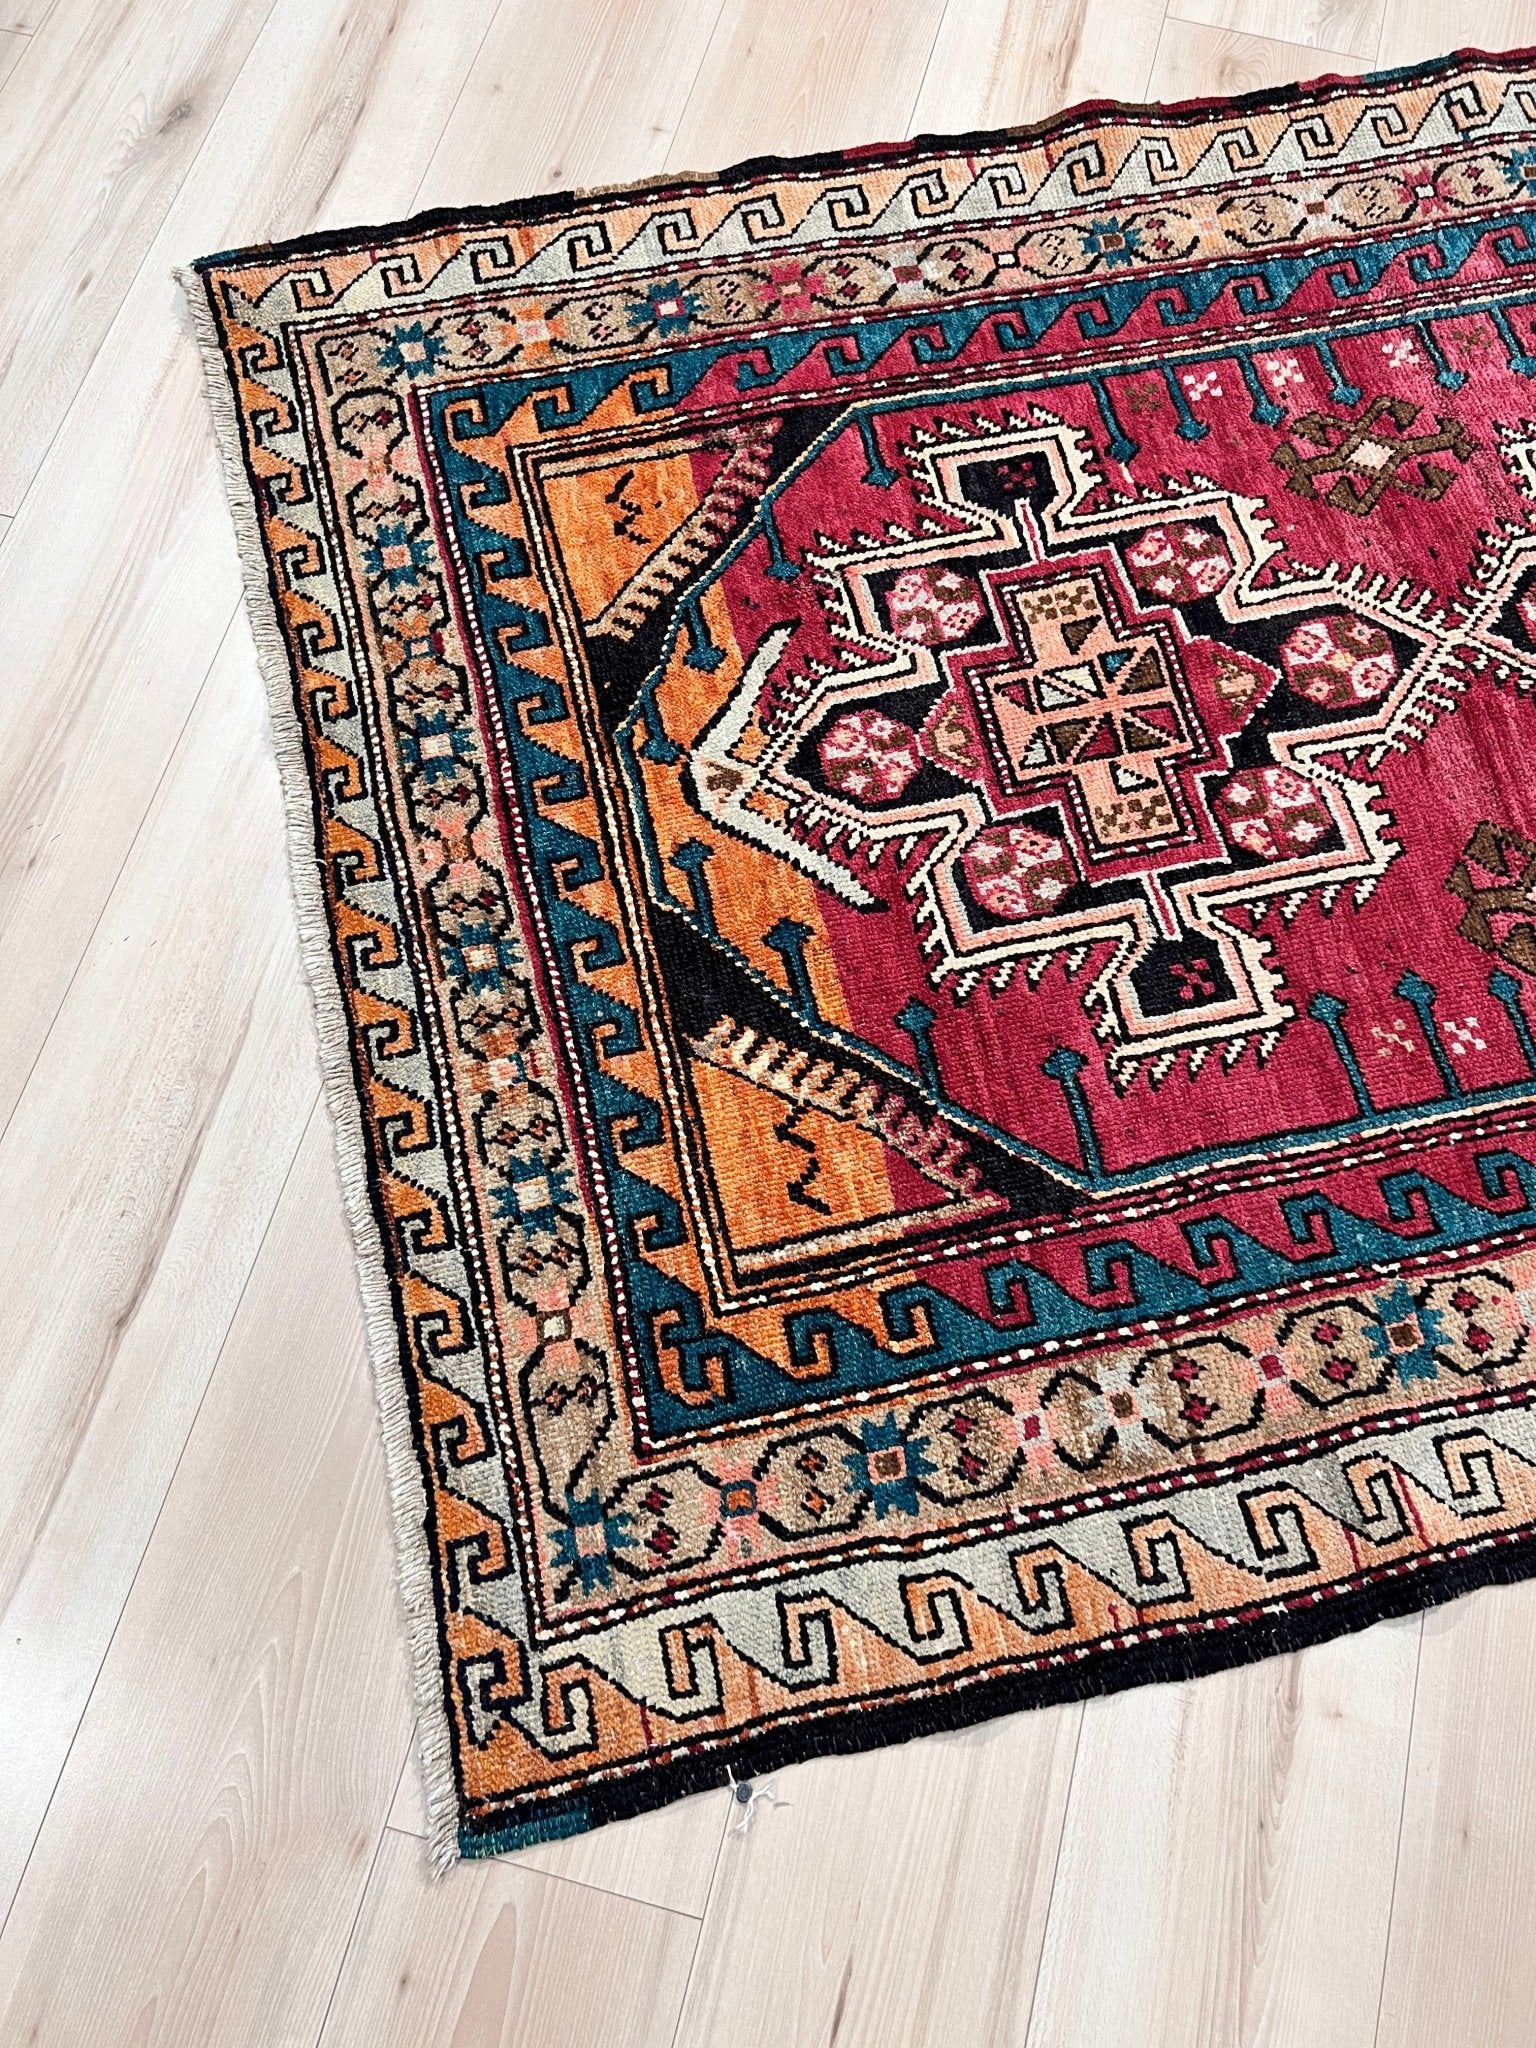 Derbend caucasian wide runner wool rug. Oriental rug store San Francisco Bay Area. . Buy handmade rug online